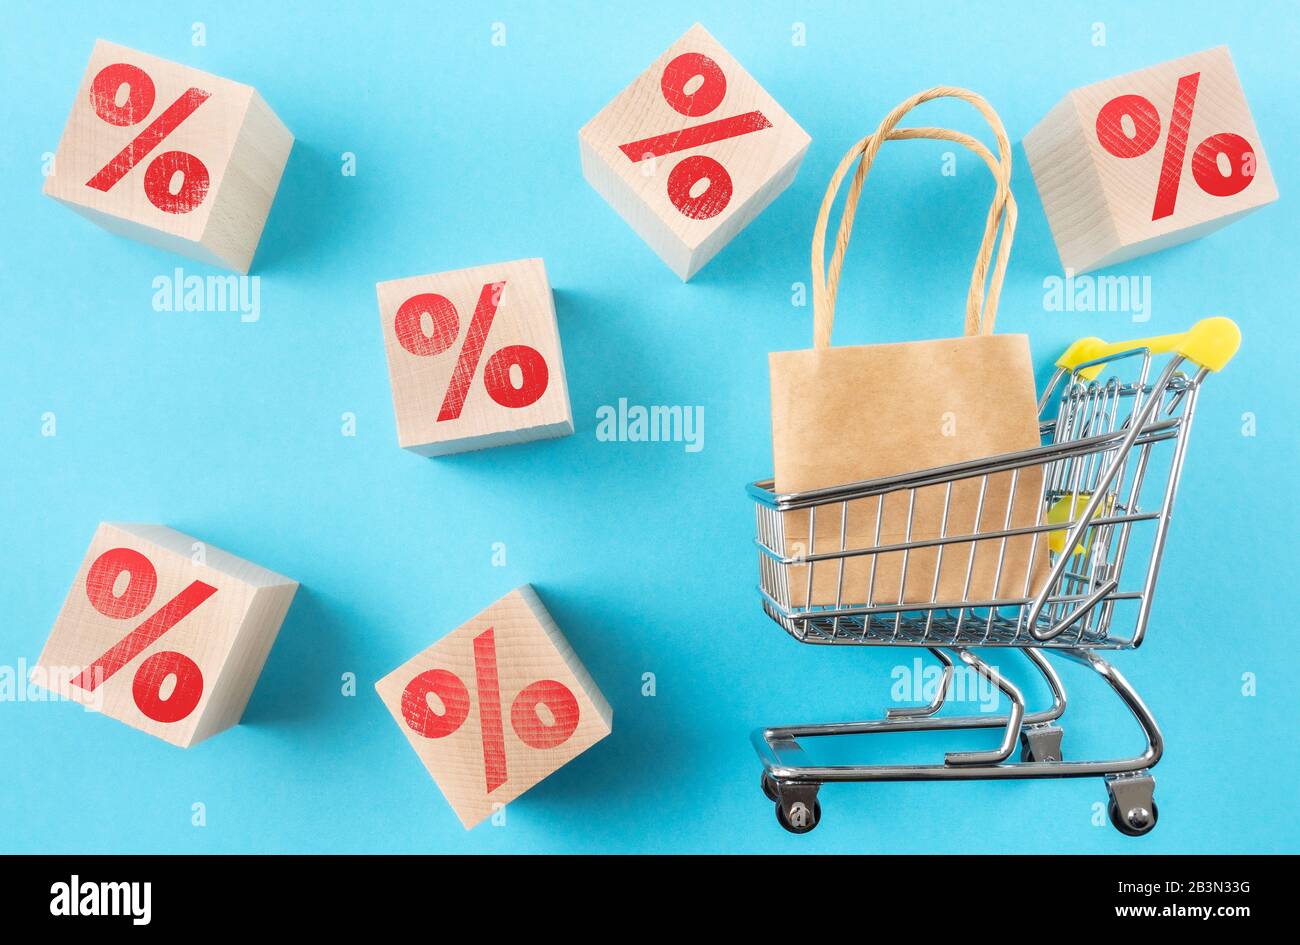 carrello con shopping bag e segno rosso per cento su cubi di legno su sfondo blu, vendita al dettaglio e concetto di sconto Foto Stock